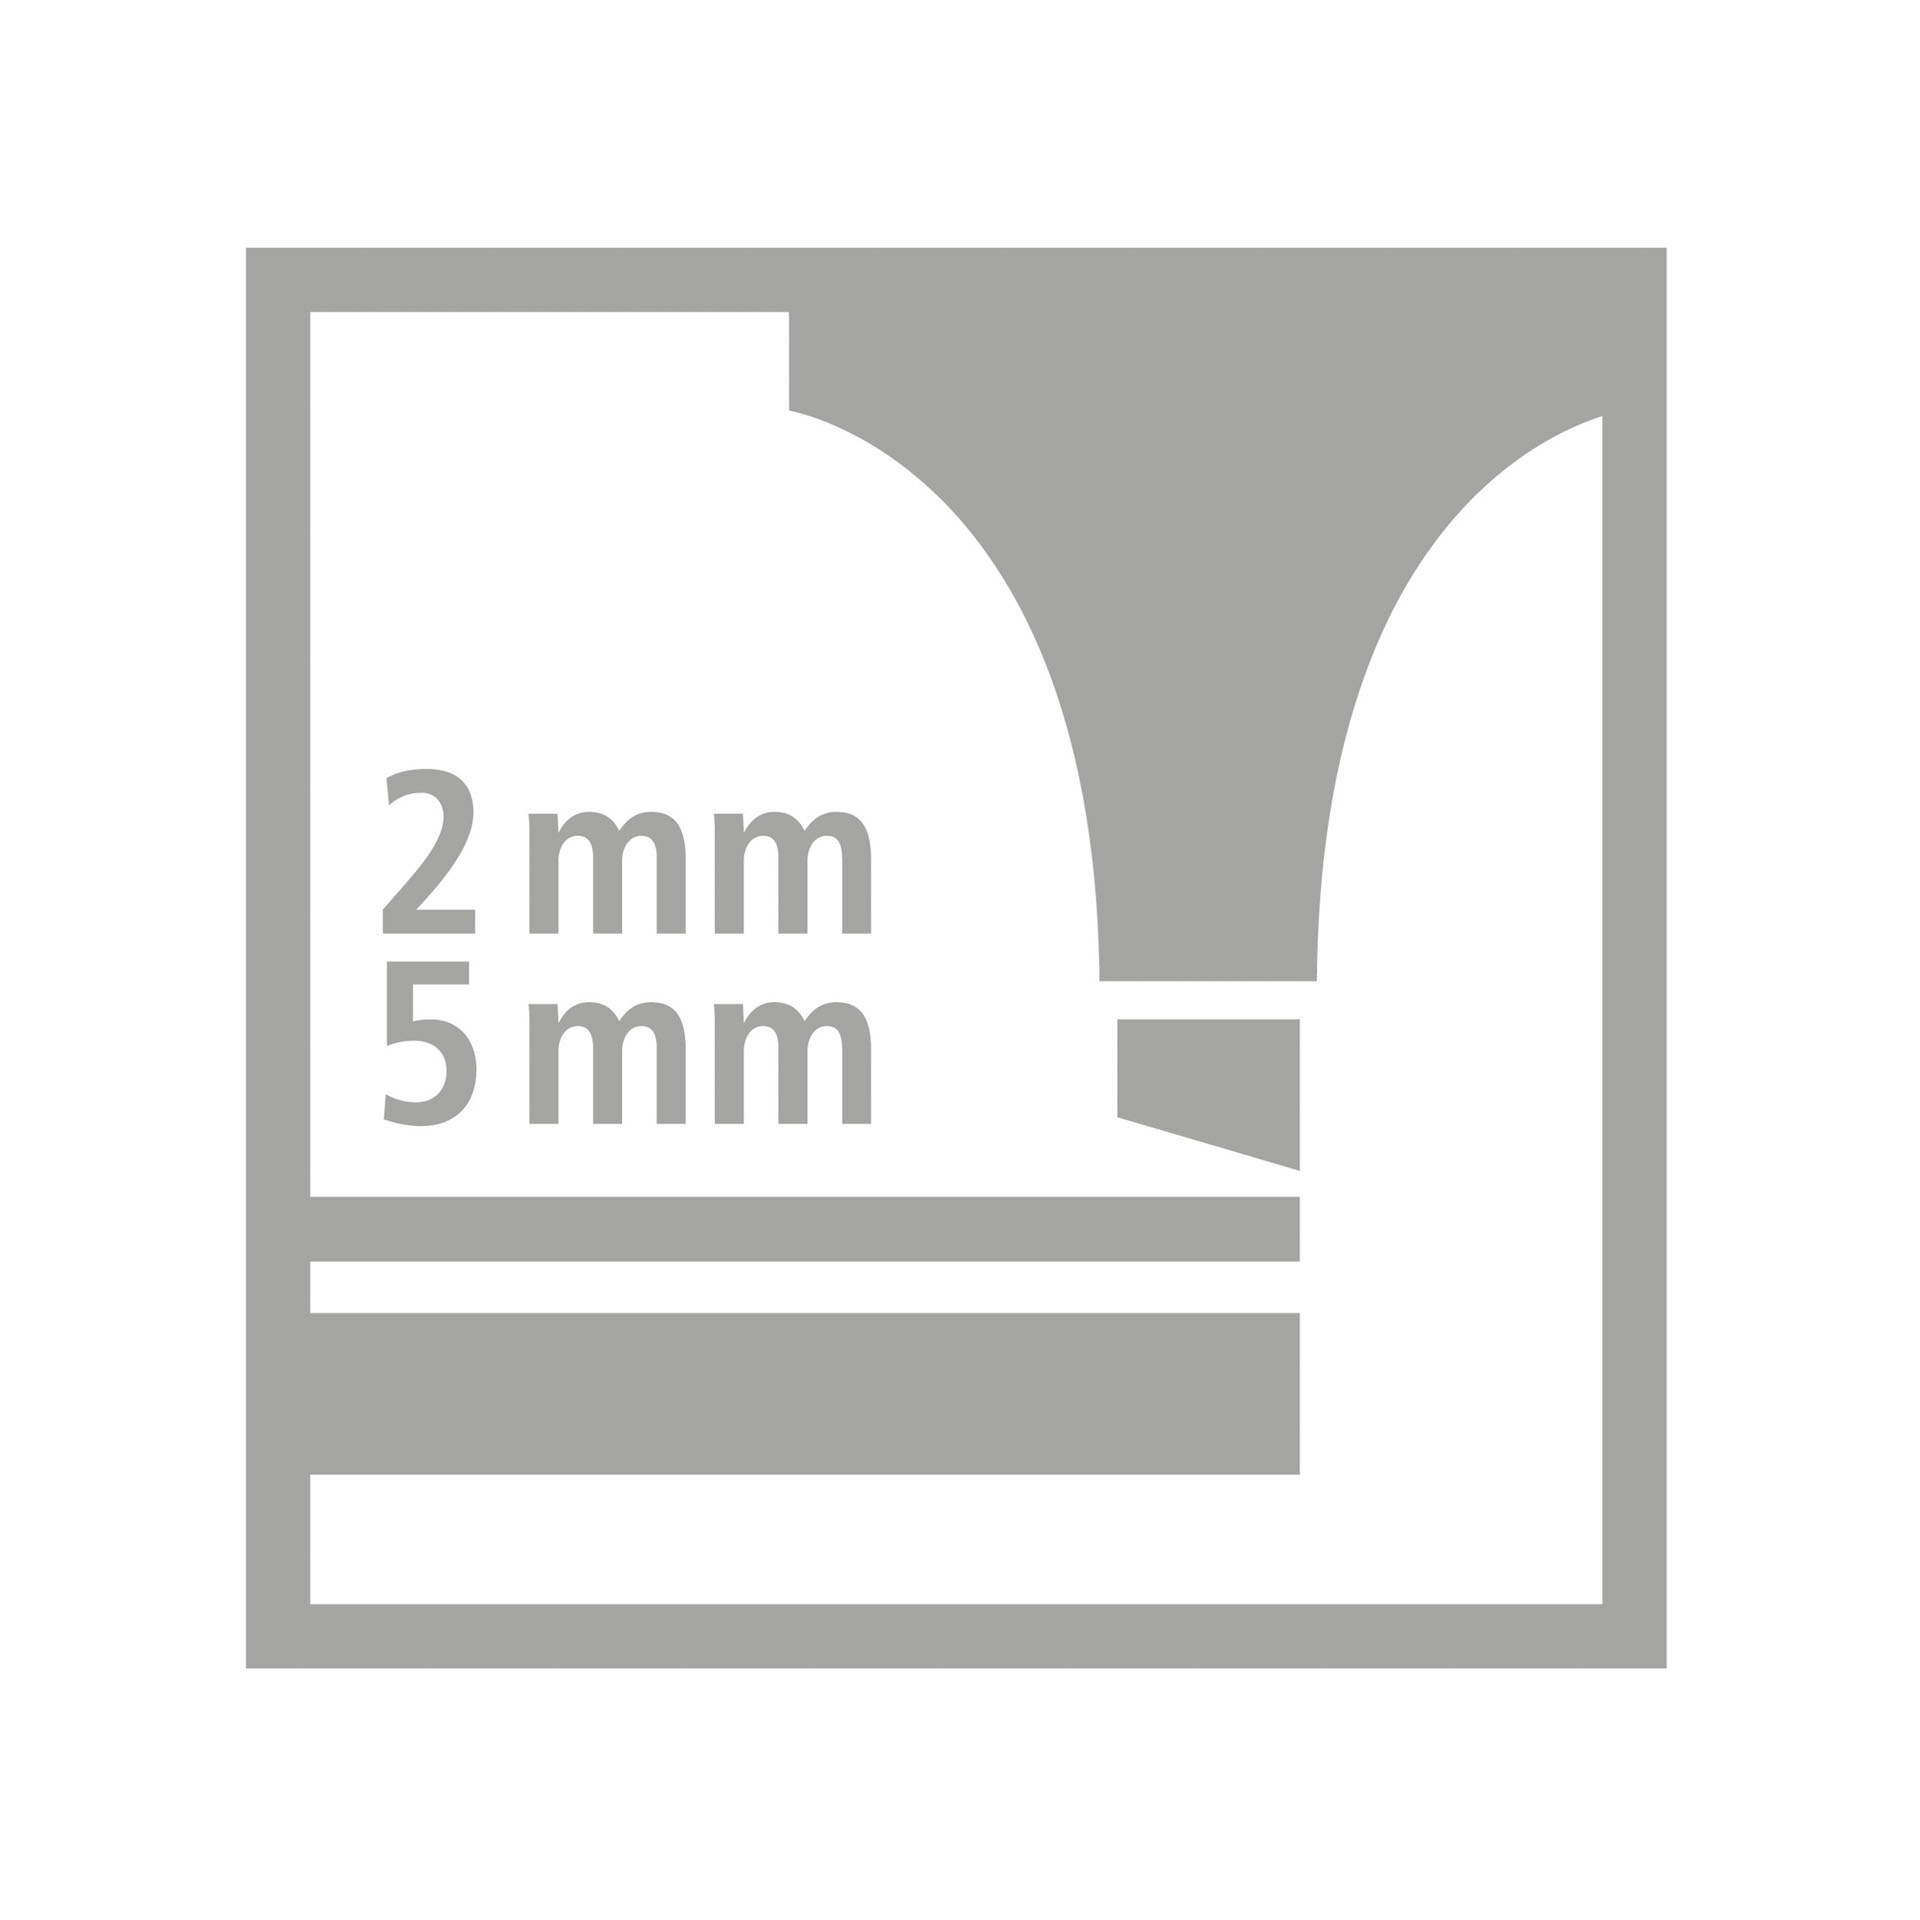 Evidenziatore - STABILO LUMINATOR - lunga durata e doppio tratto (2 + 5 mm), , large